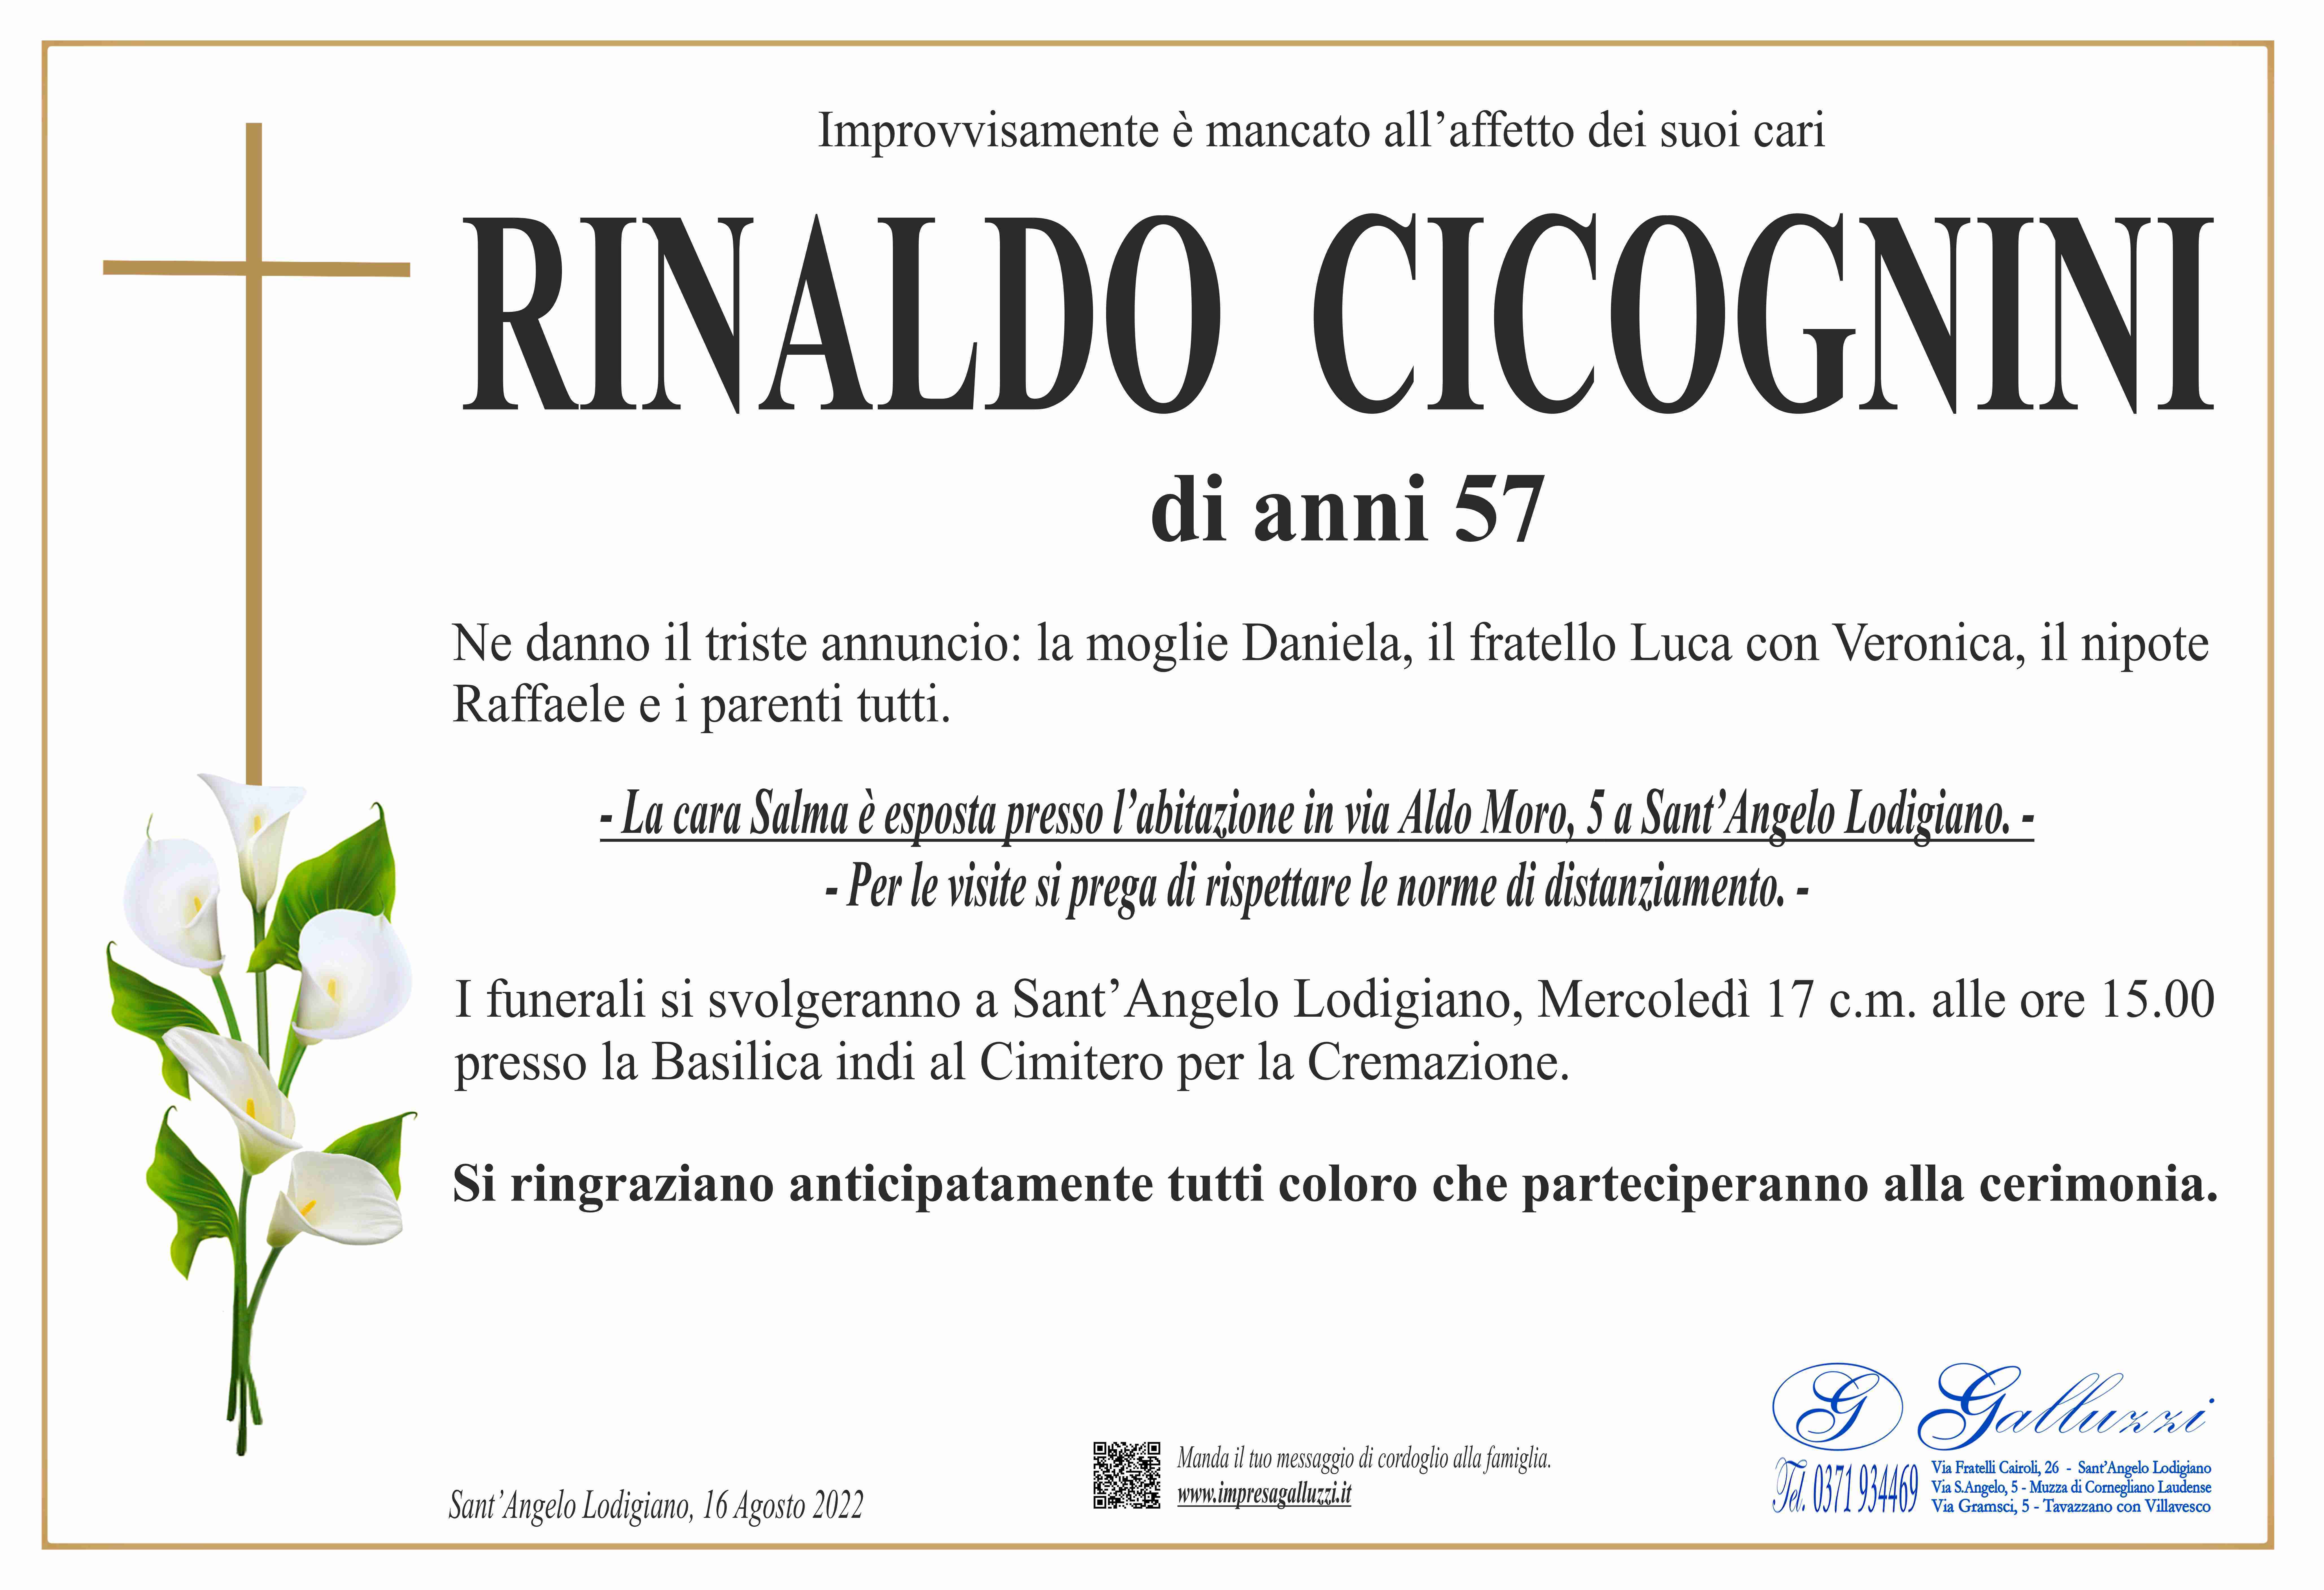 Rinaldo Cicognini